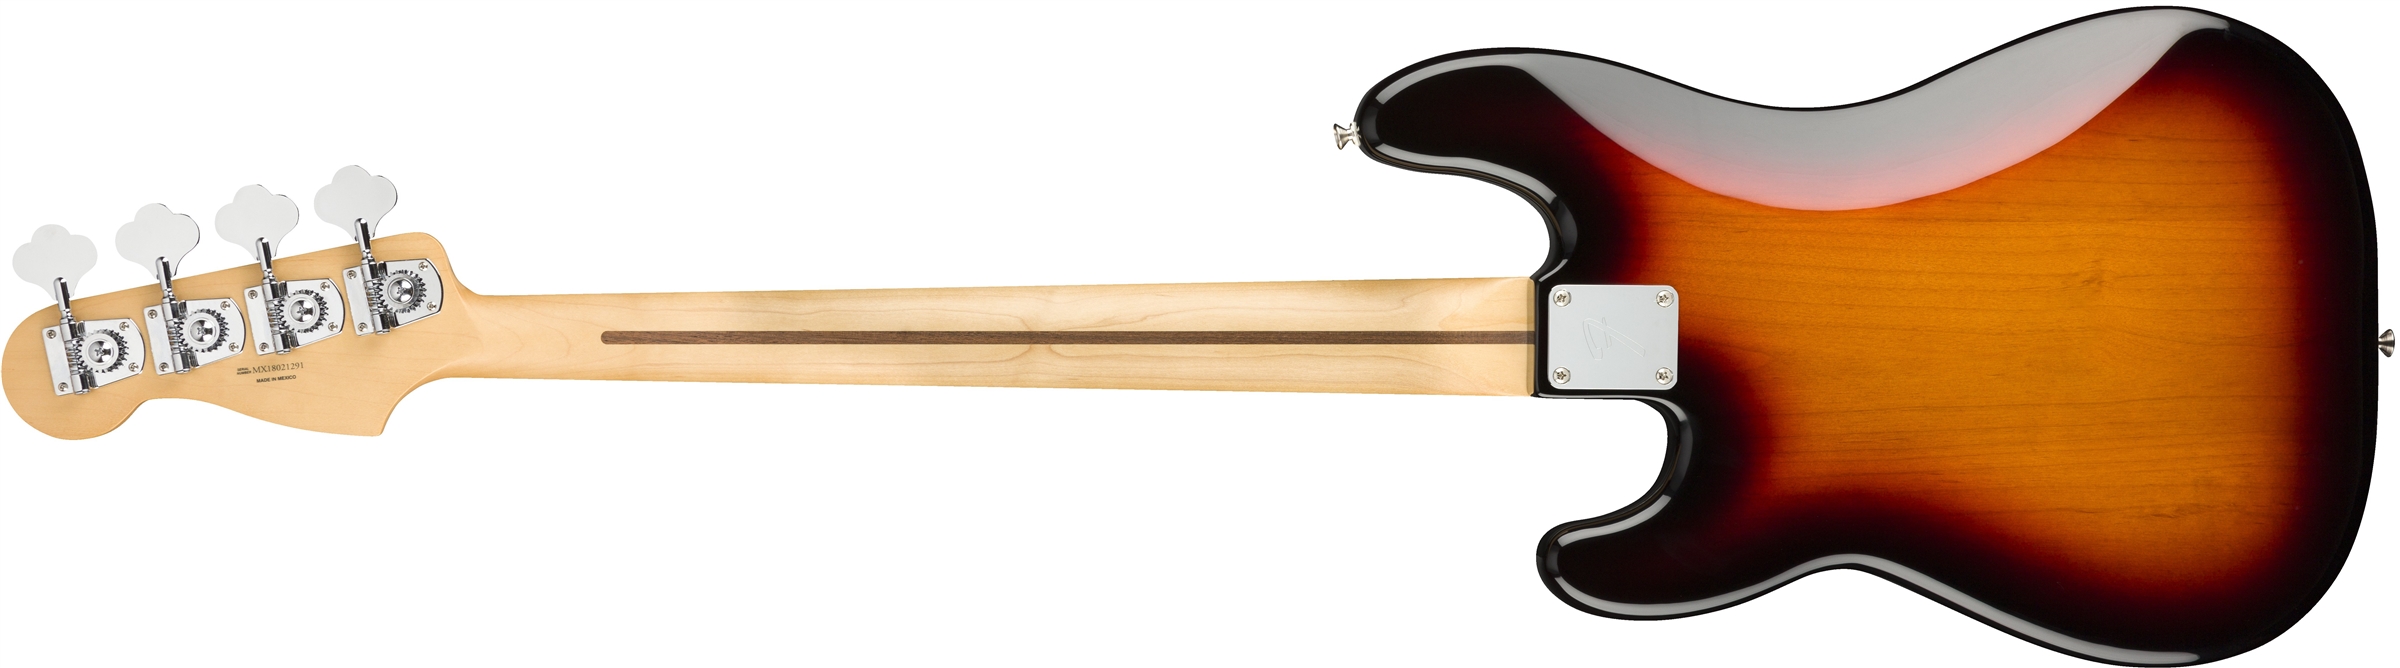 Fender Precision Bass Player Mex Mn - 3-color Sunburst - Basse Électrique Solid Body - Variation 1